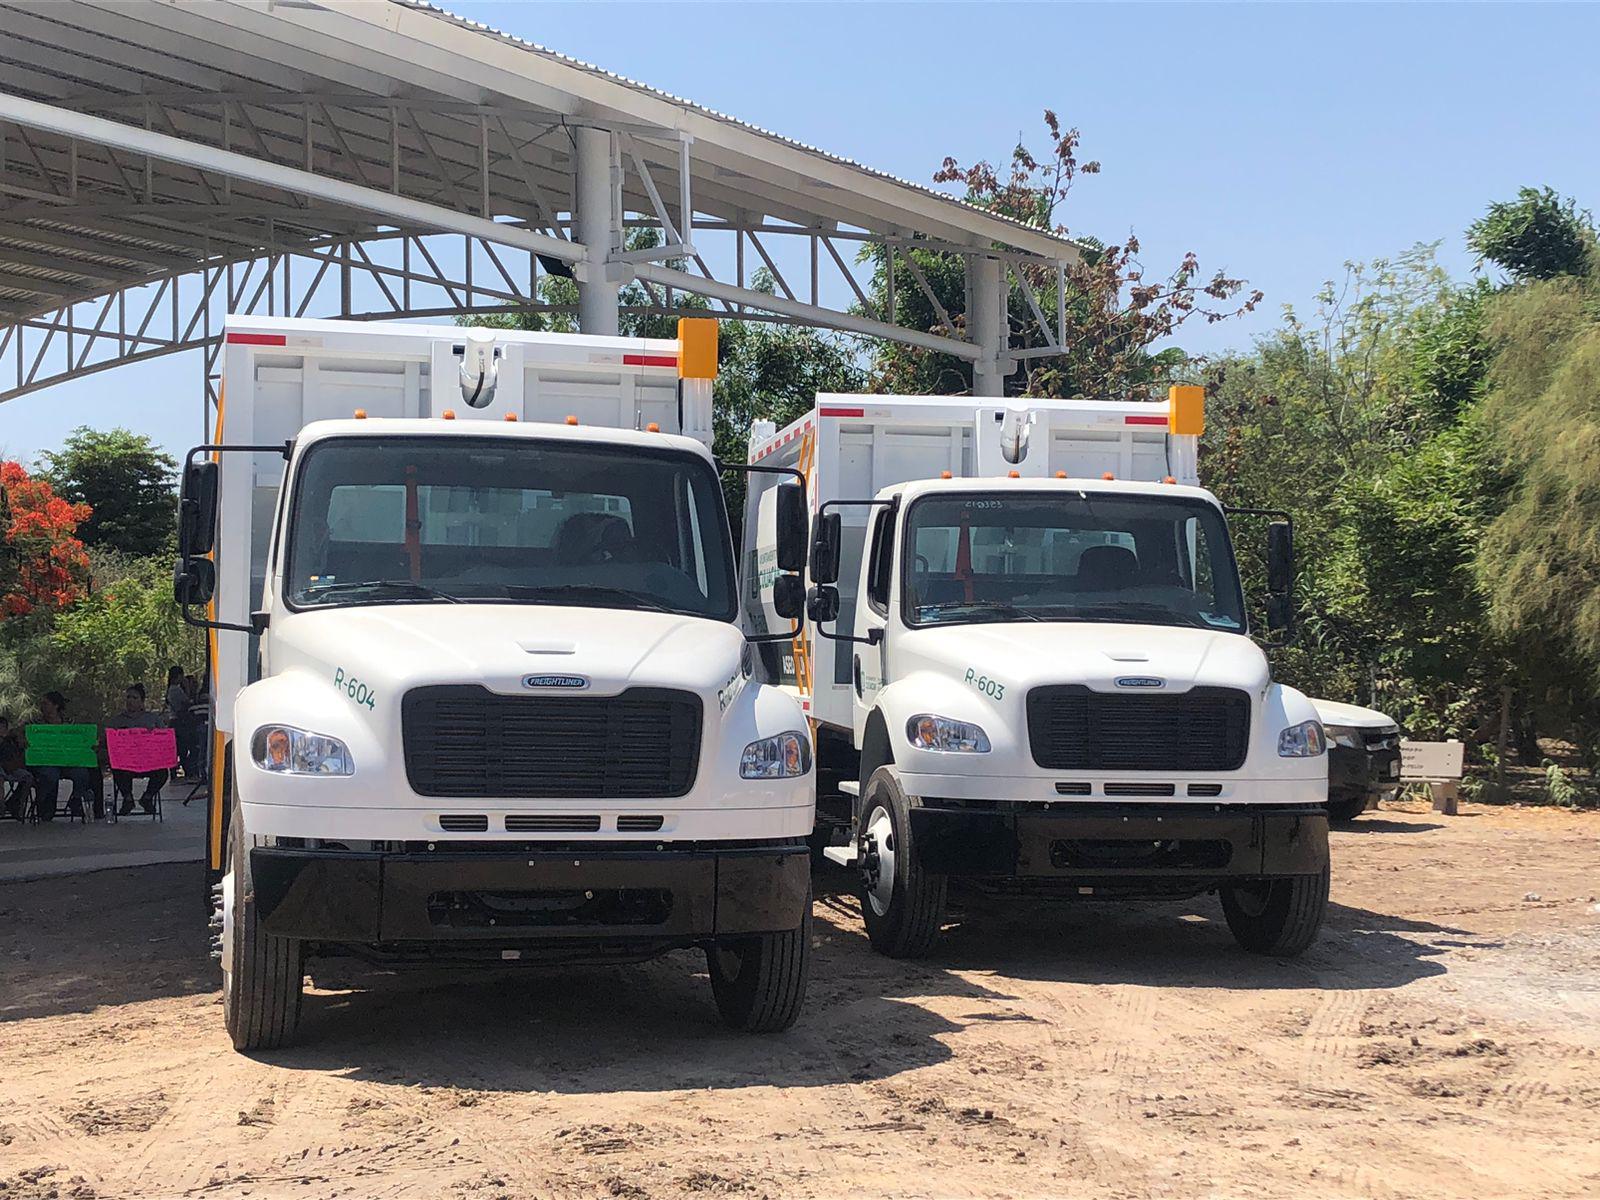 $!Gobierno de Culiacán entrega dos camiones recolectores en Quilá